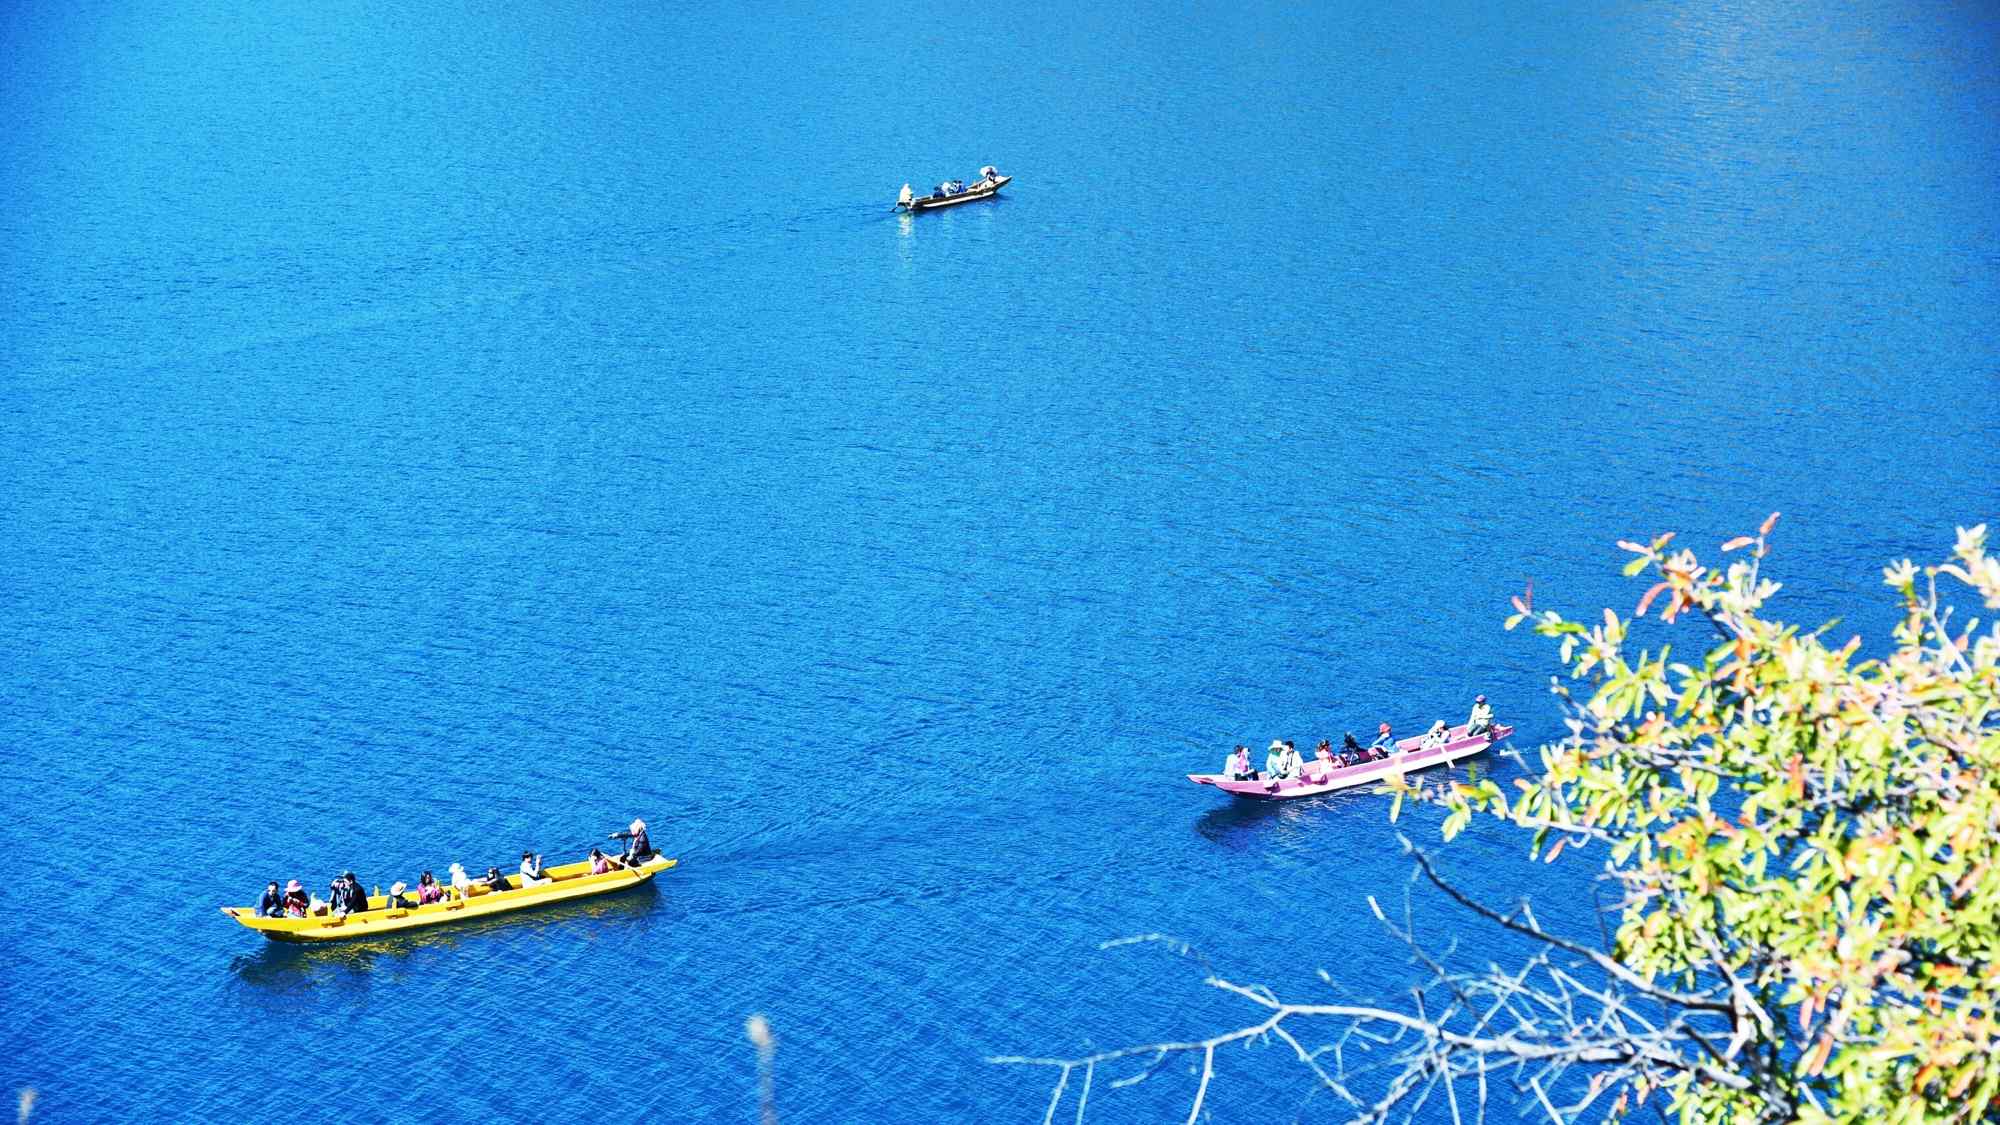 蓝色美丽的泸沽湖风景桌面壁纸